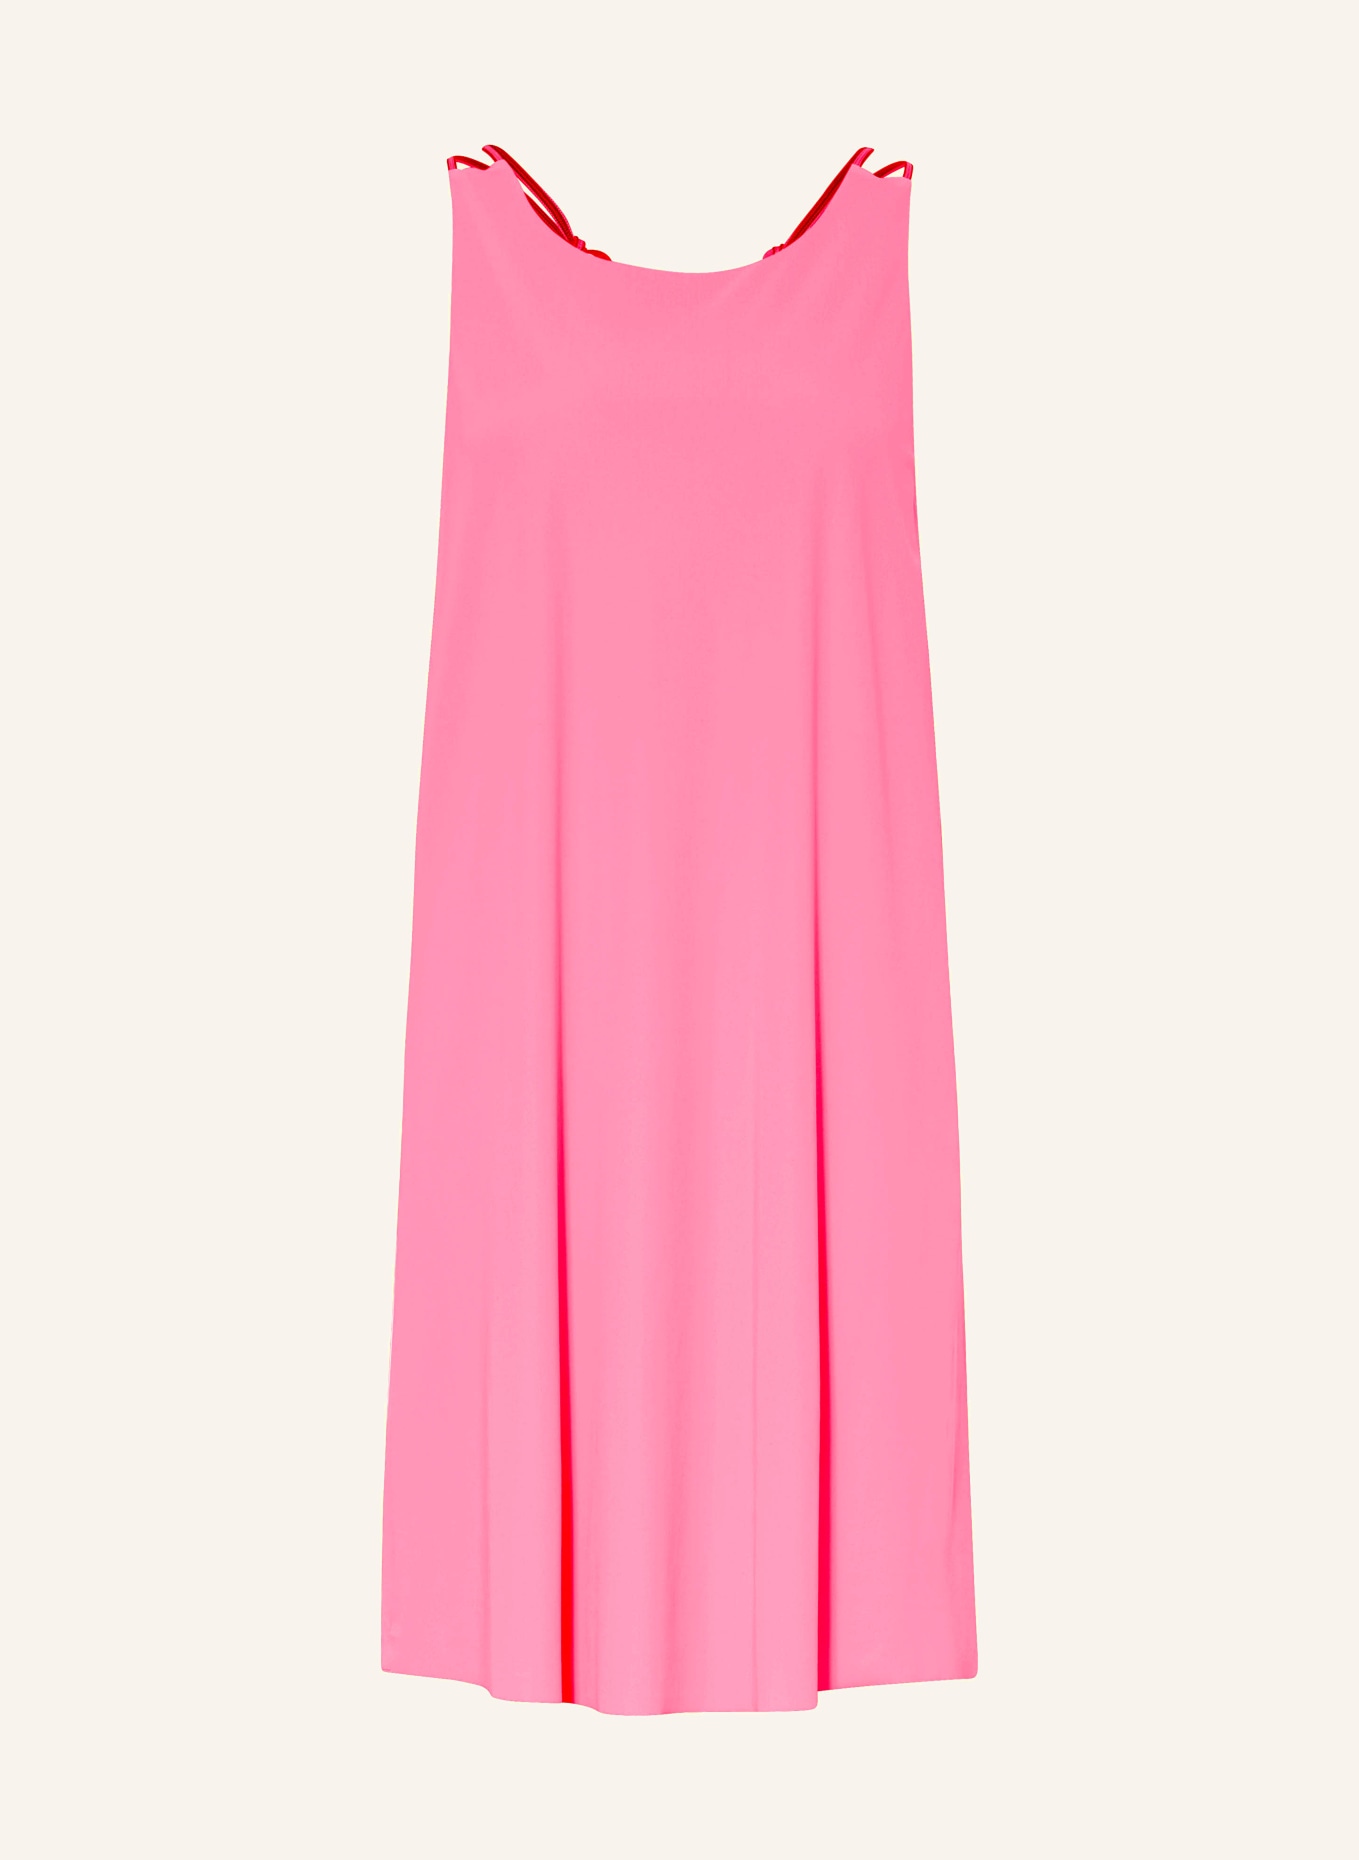 SPORTALM Kleid, Farbe: 74 Candy Pink (Bild 1)